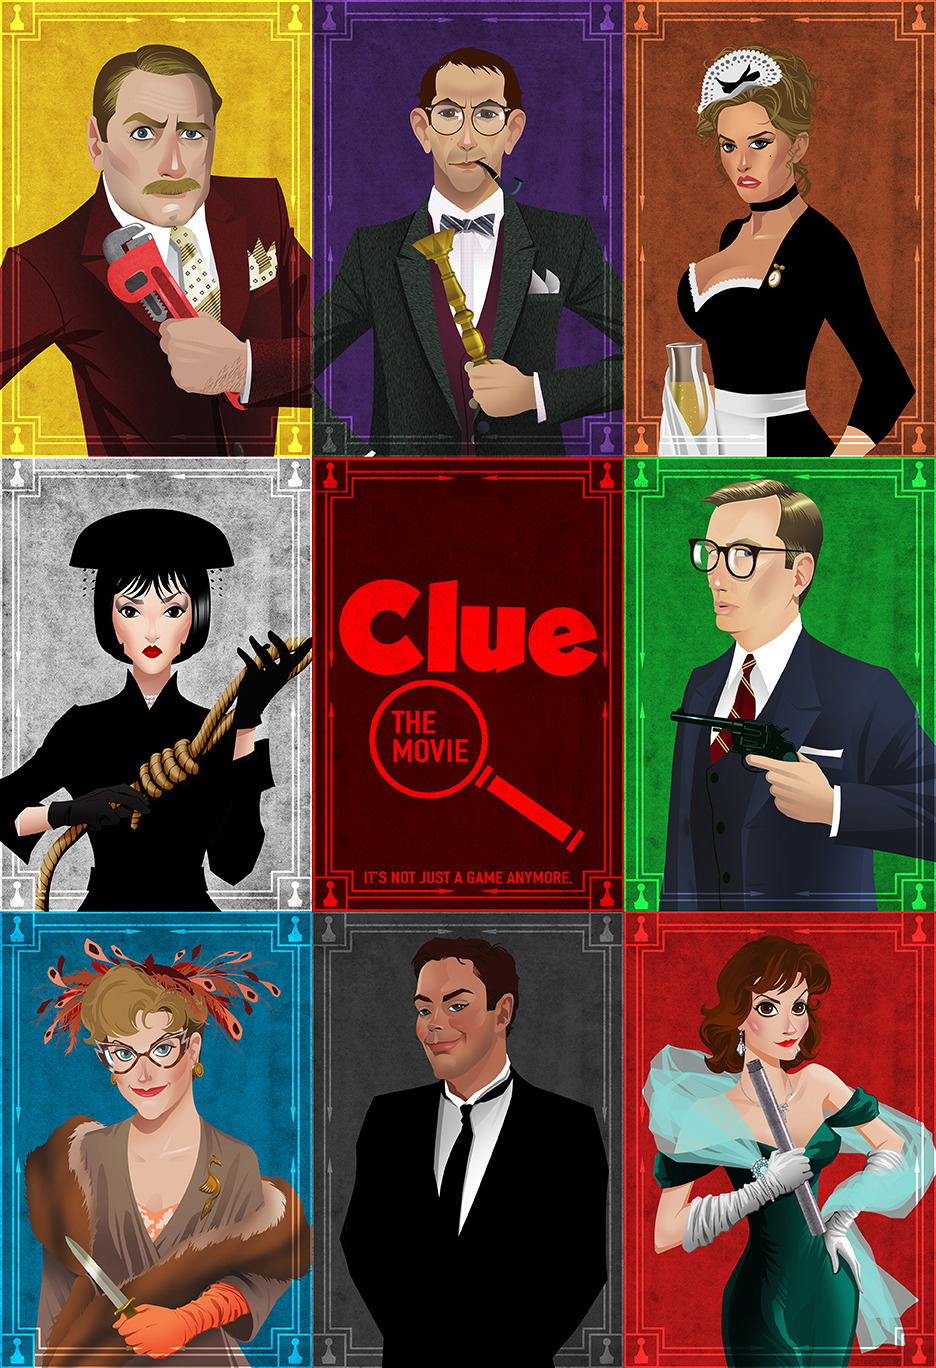 Sony planea llevar 'Clue' a cine y televisión 16